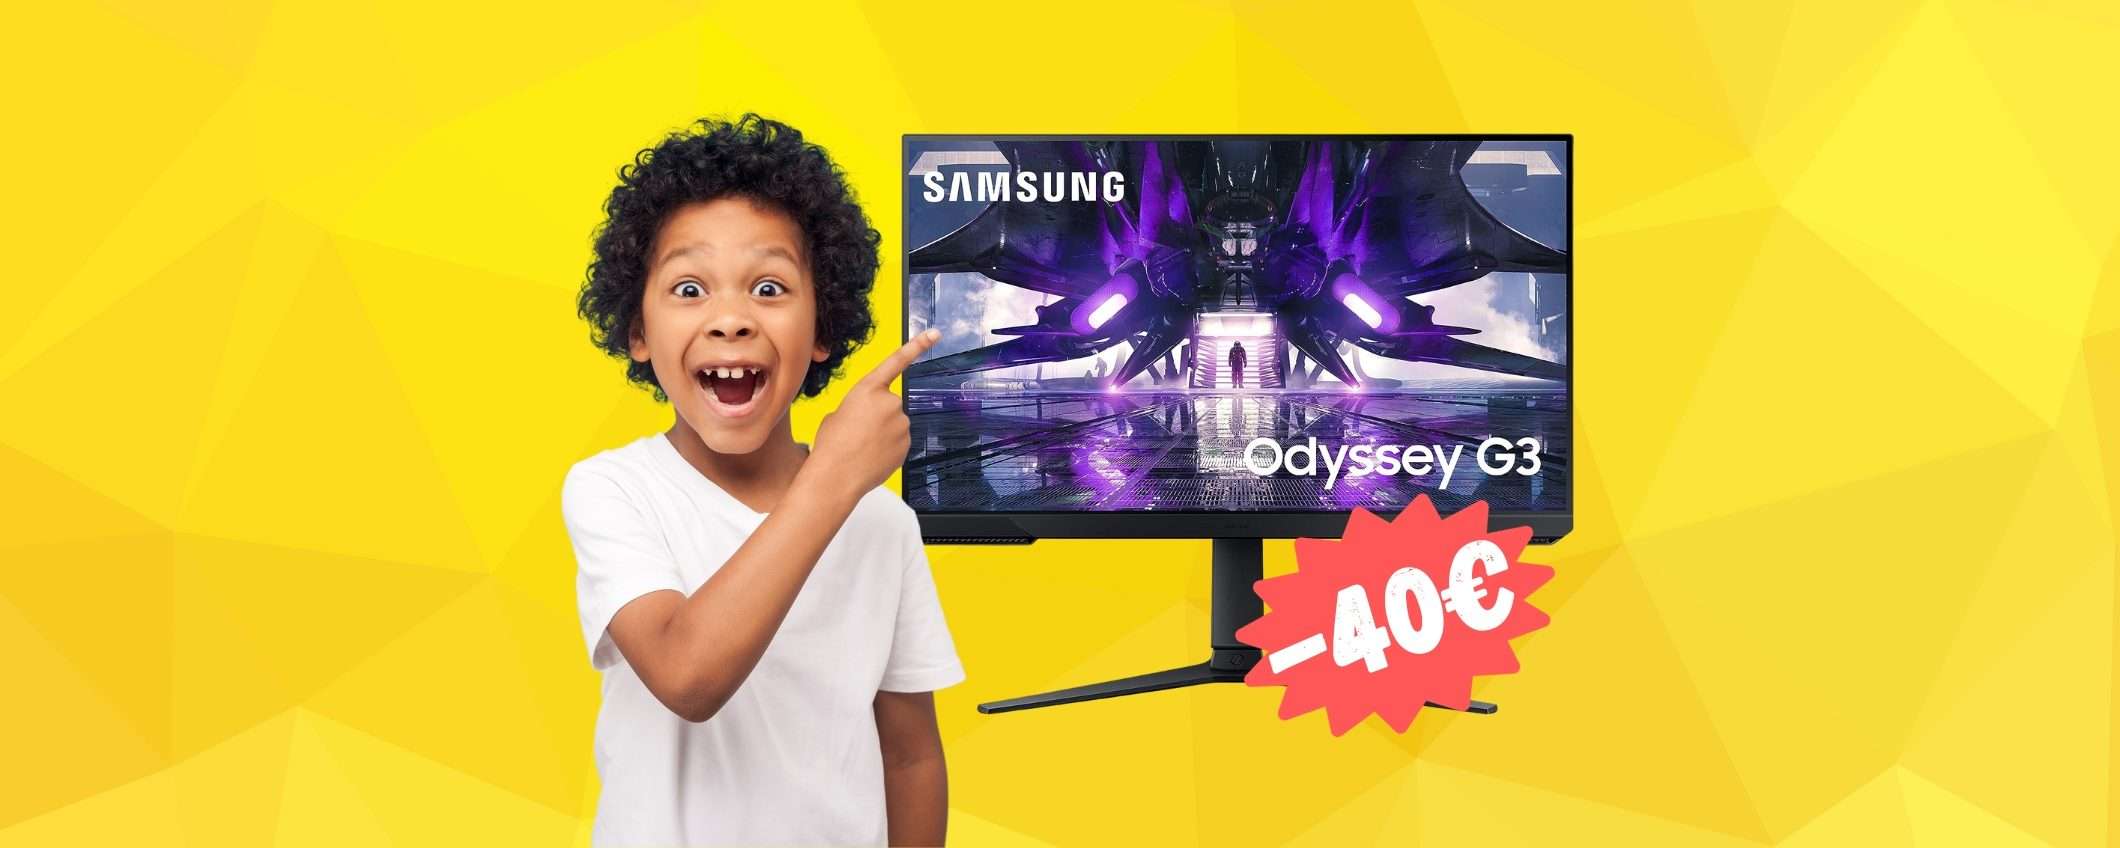 Samsung Odyssey G3: FHD, 165Hz, tempo di risposta 1ms (-20%)